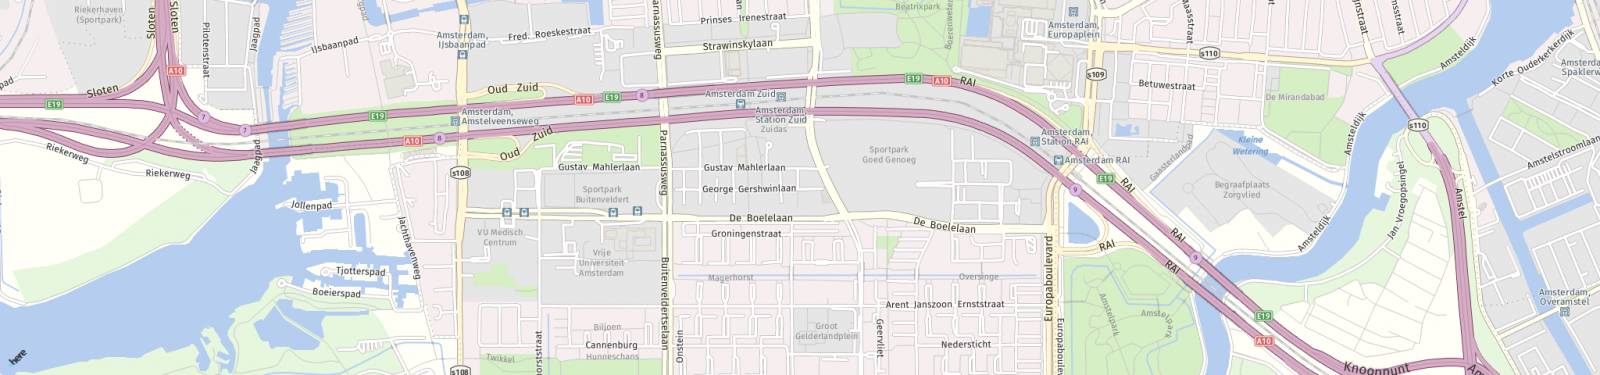 Kaart met locatie Huurwoning Rosy Wertheimstraat